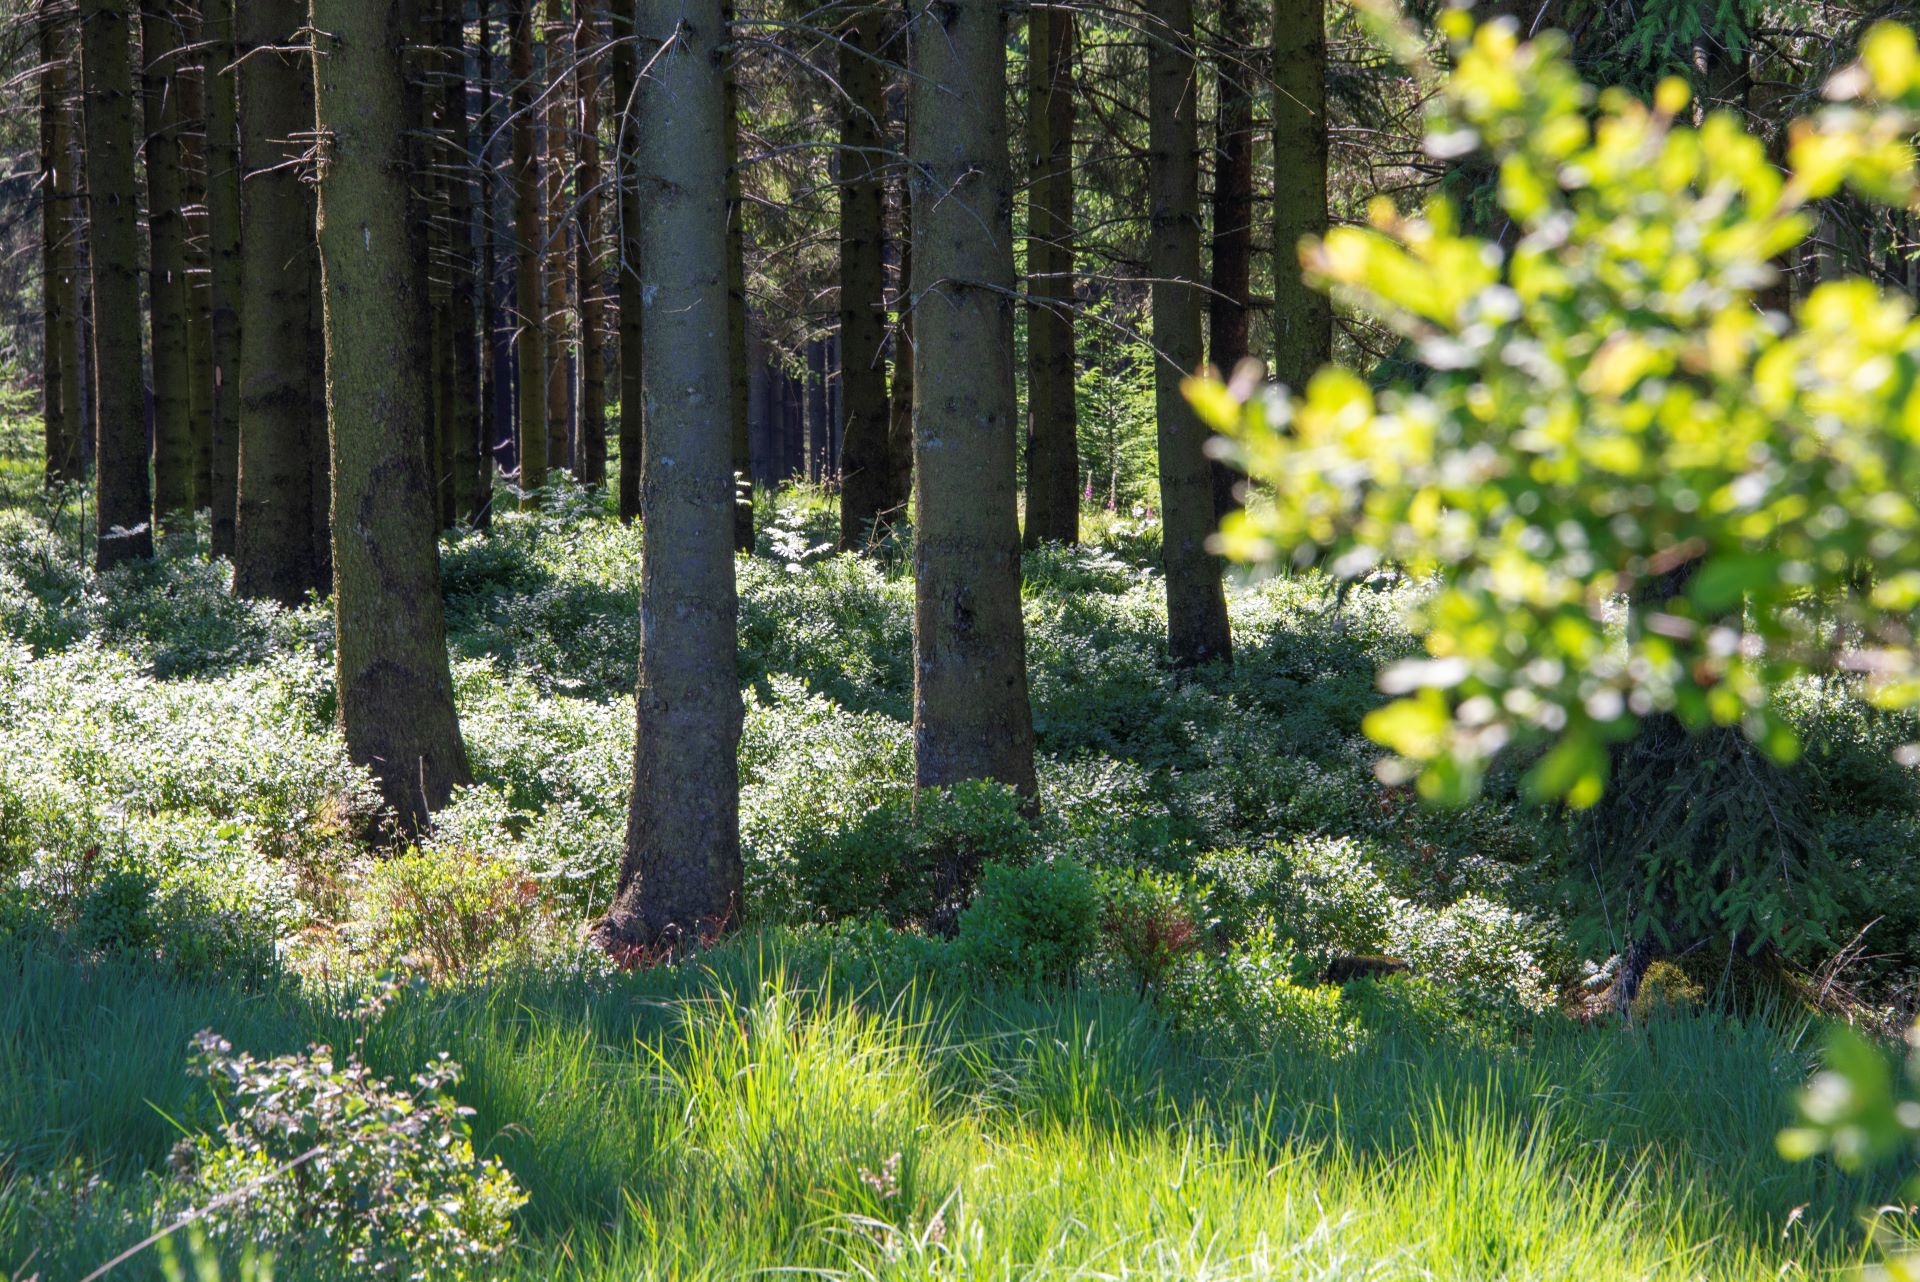 Ein Blick in den Wald fokussiert auf die Unterseiten von Bäumen, die mehrere Meter von der Kamera entfernt sind. Gräser und Grünzeug umgeben die großen Bäume.